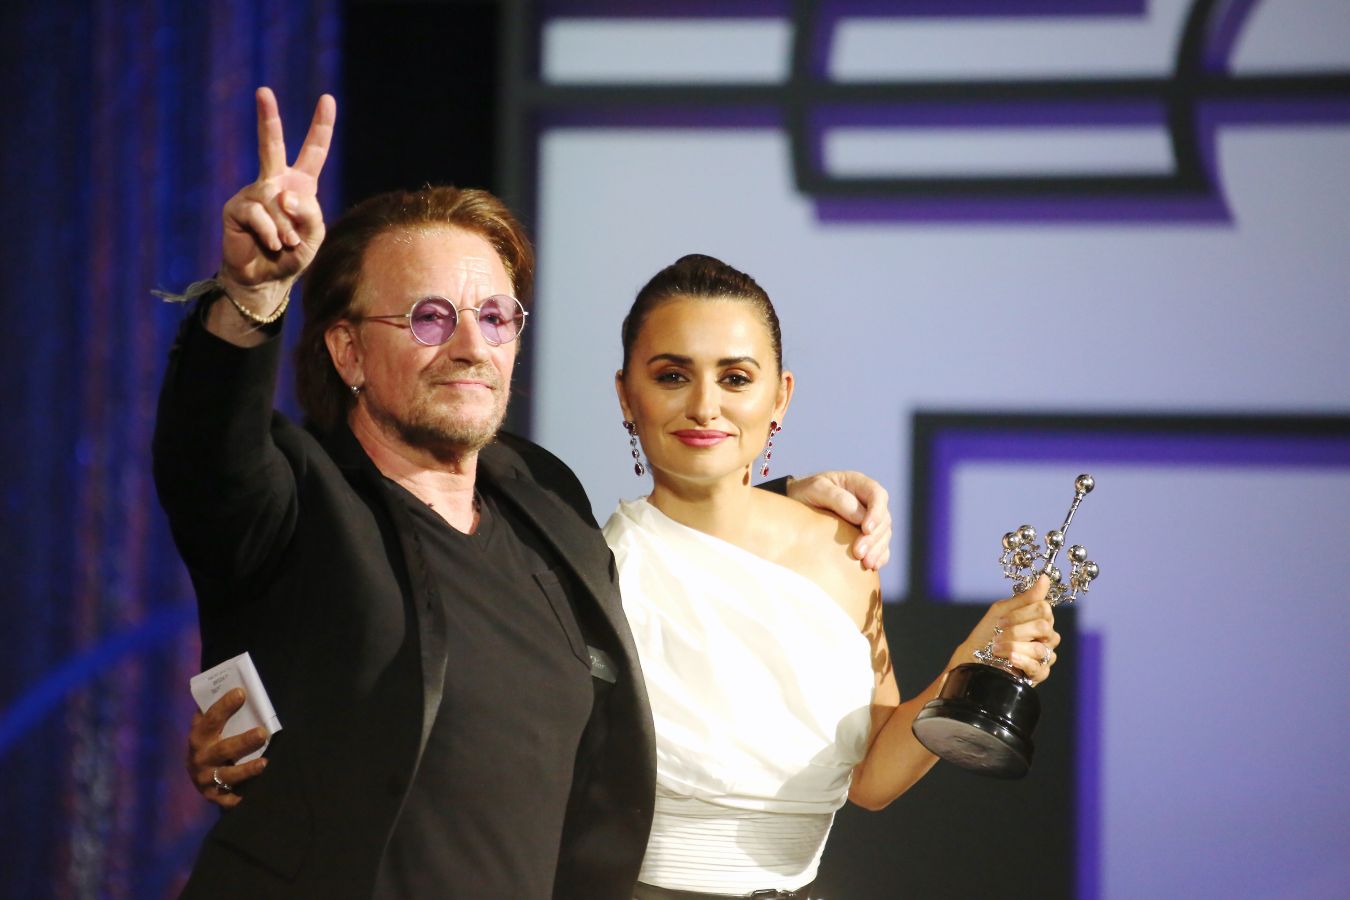 El cantante irlandés de U2 Bono ha sido el encargado de entregar el galardón a Penélope Cruz en el Kursaal